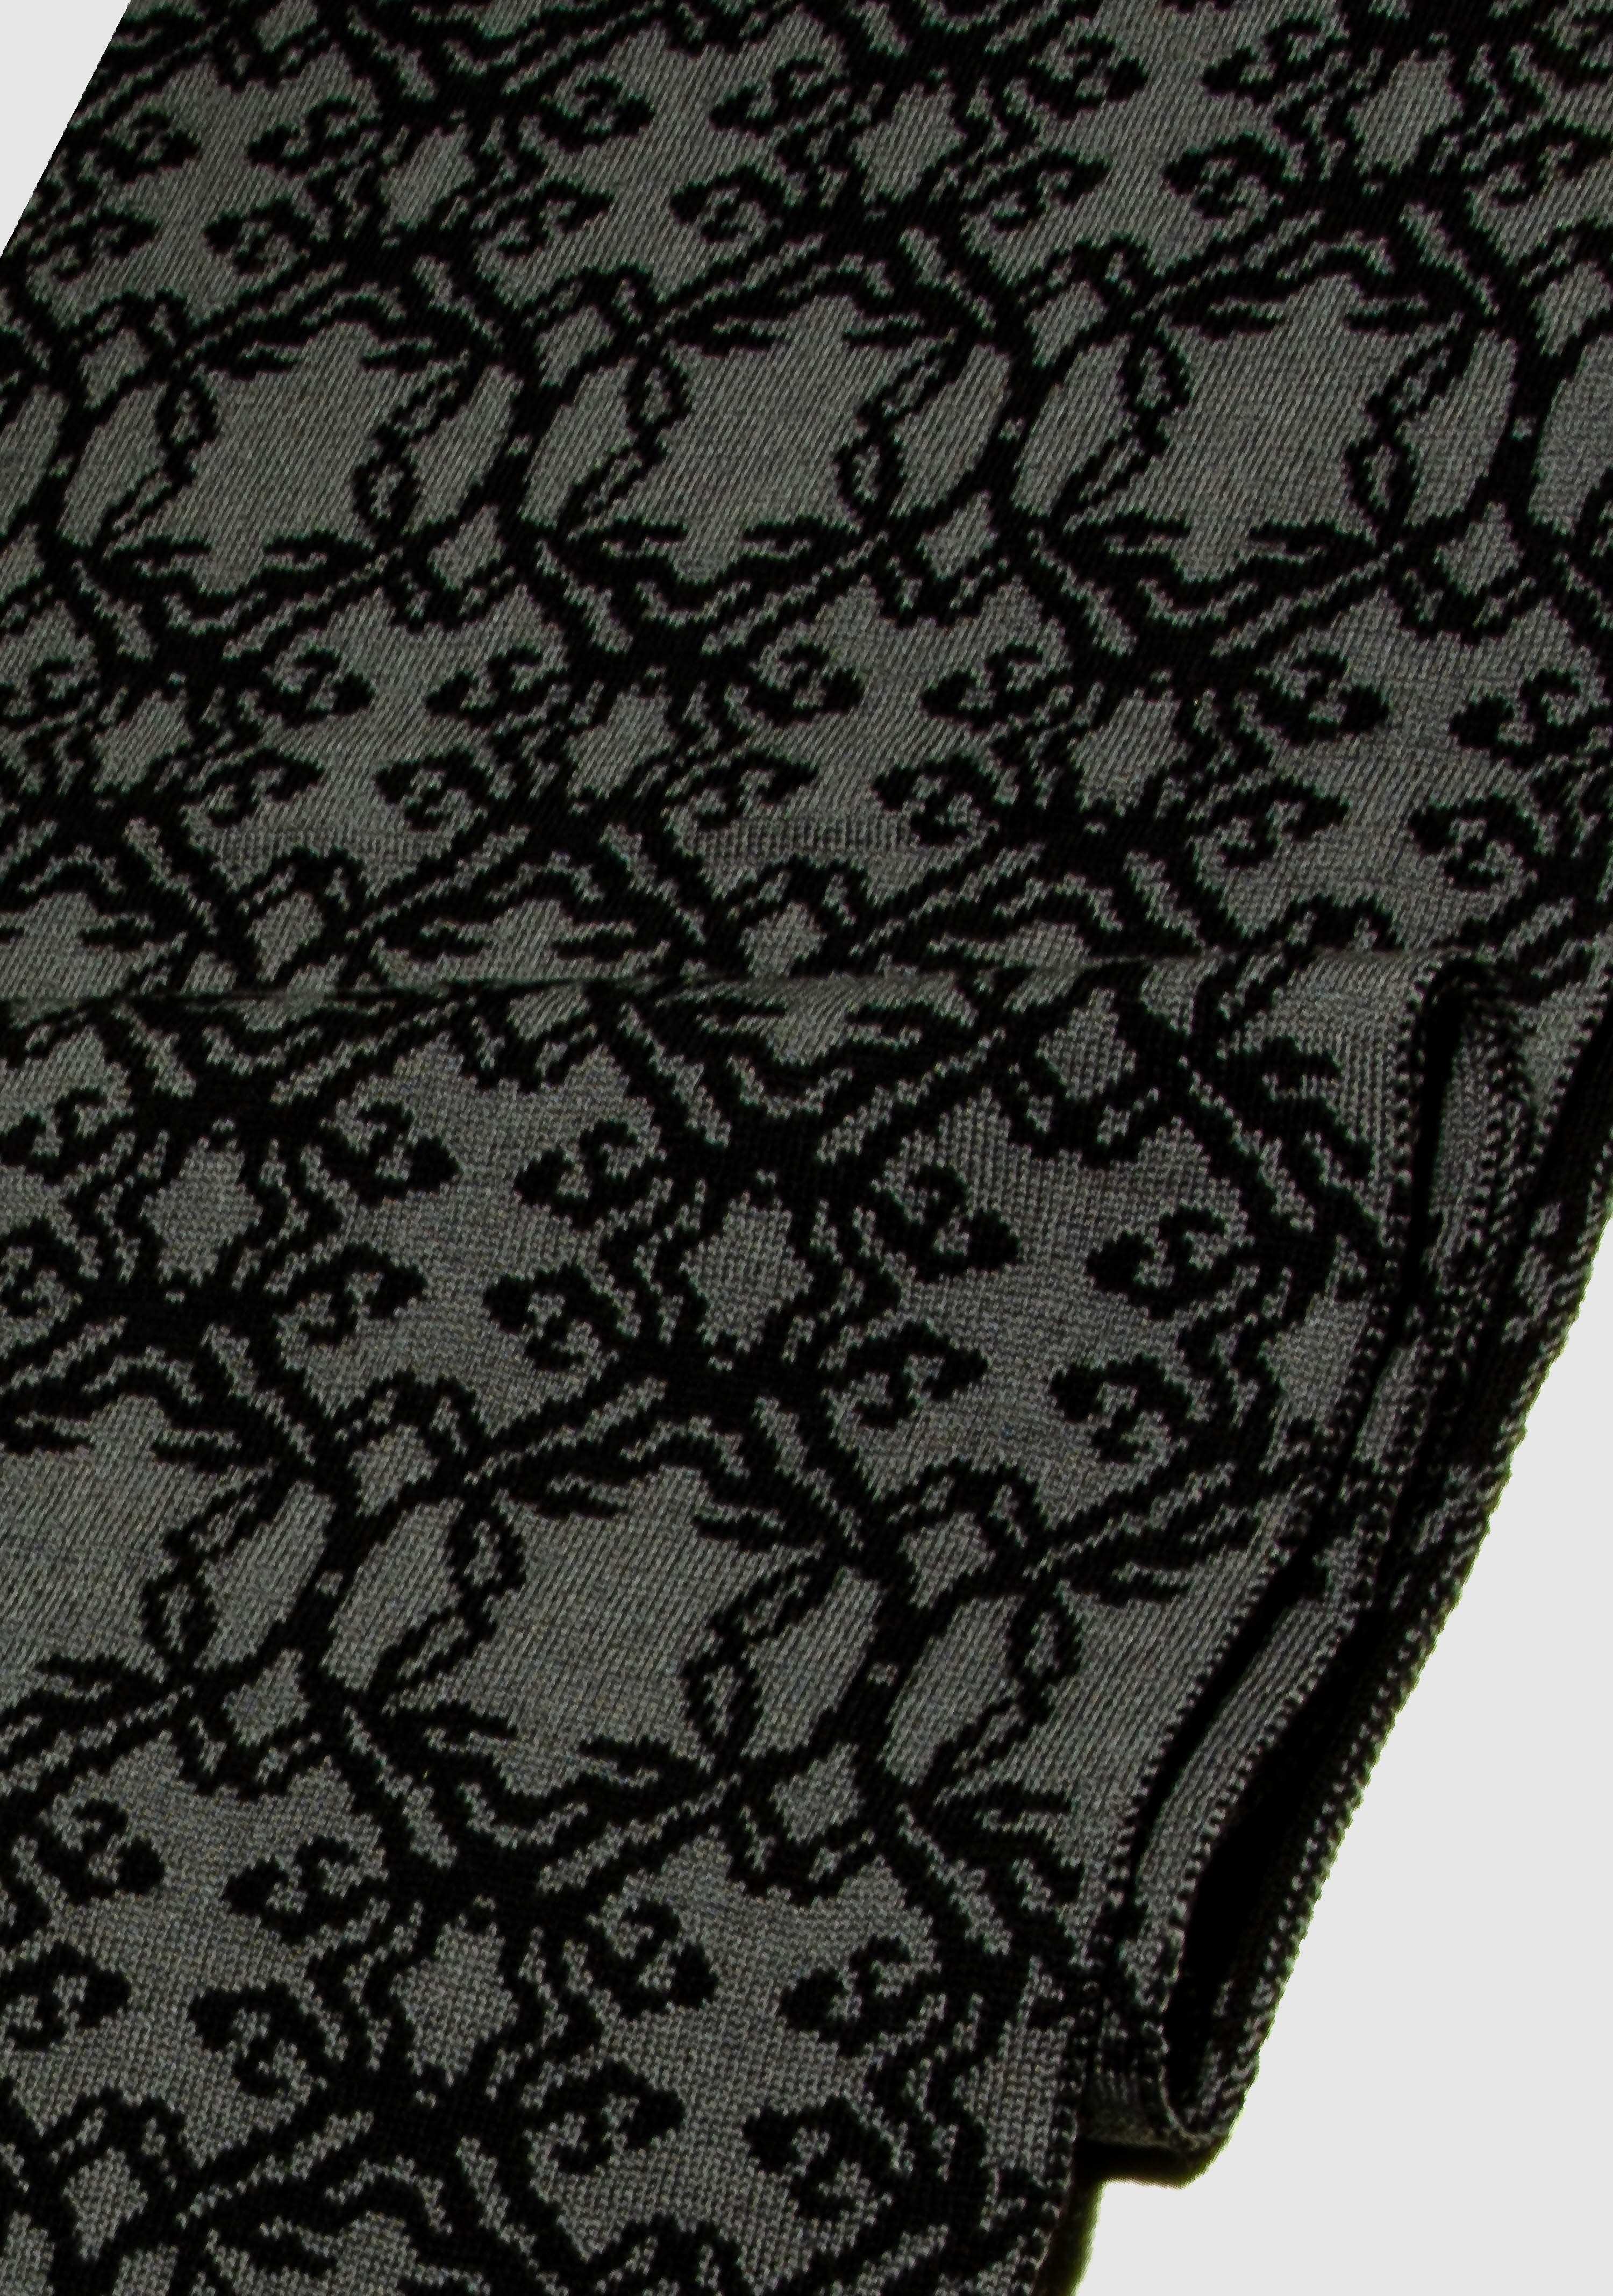 LANARTO slow fashion Strickschal Schal Kranz aus 100% Merino extrasoft in schönen Farben schwarz_graphit | Strickschals